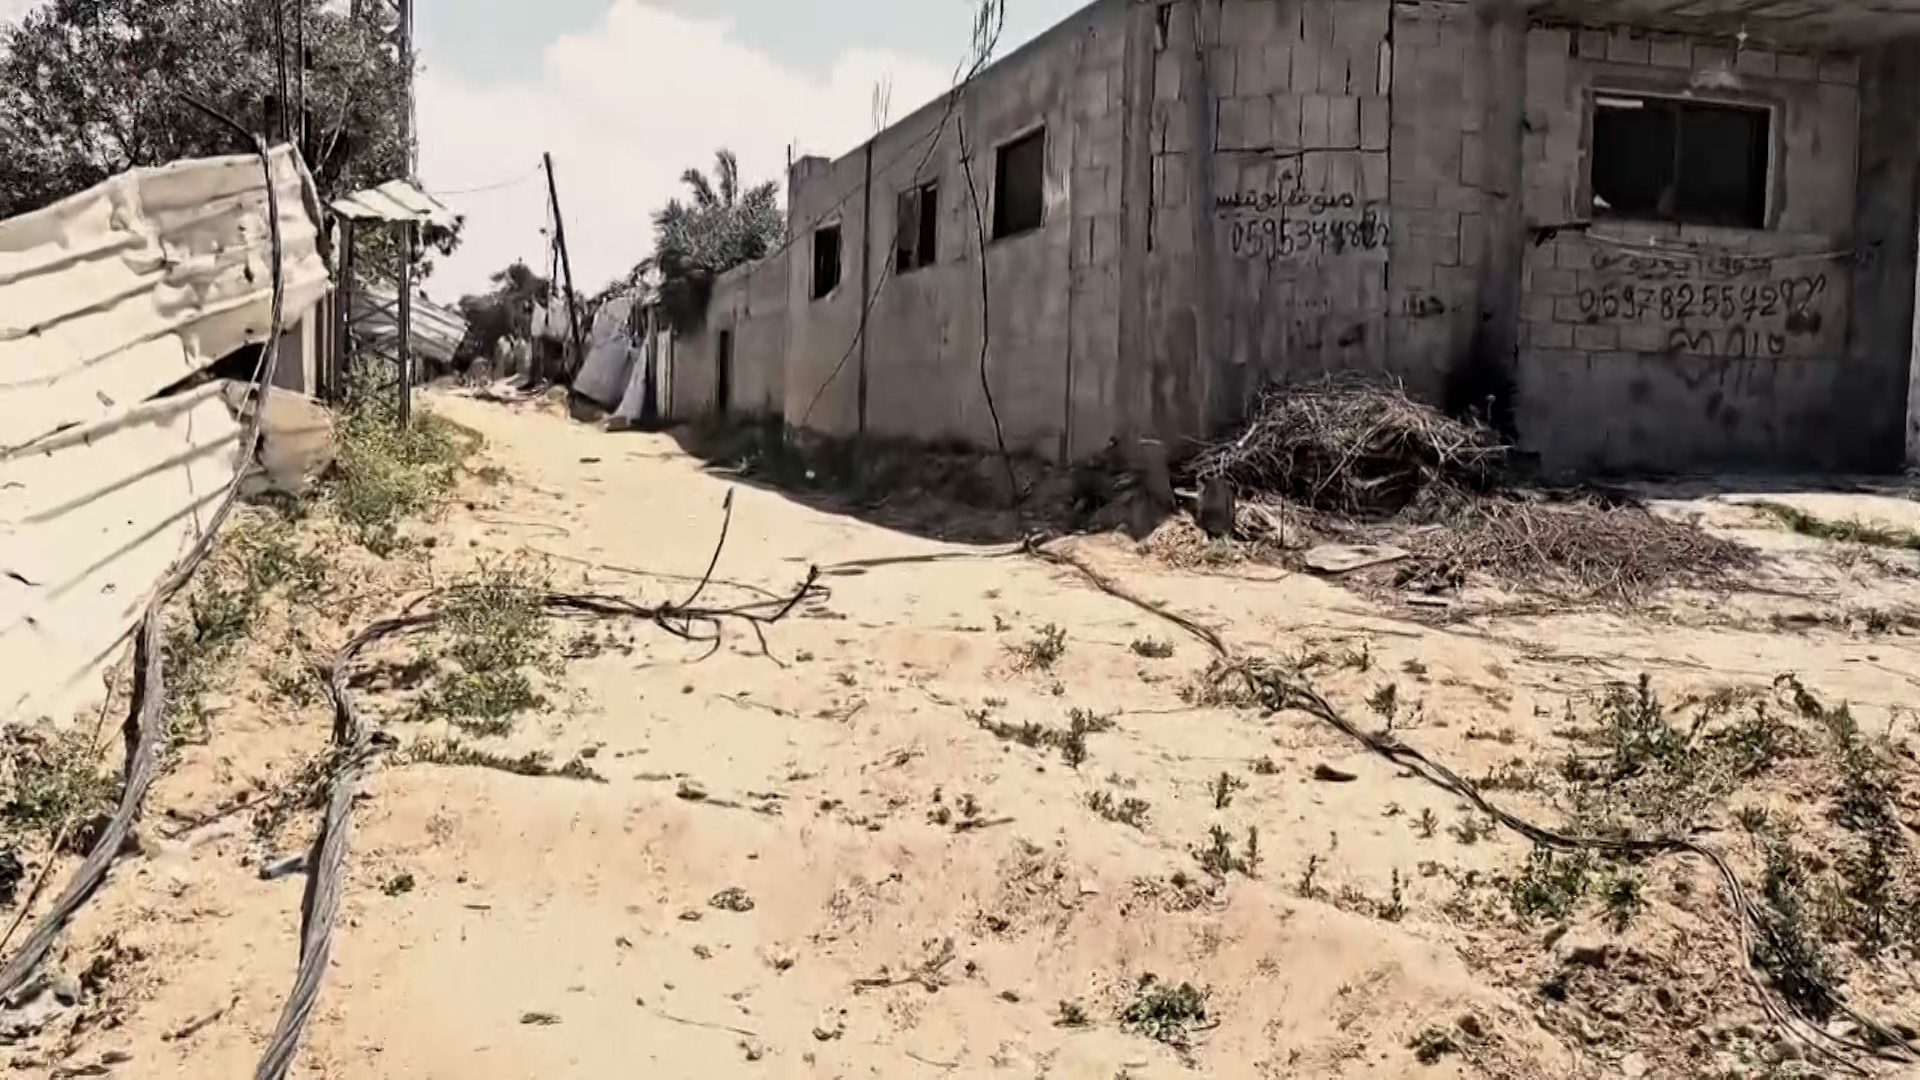 توغل آليات جيش الاحتلال الإسرائيلي يسبب دمارا كبيرا في منطقة وادي غزة | التقارير الإخبارية – البوكس نيوز